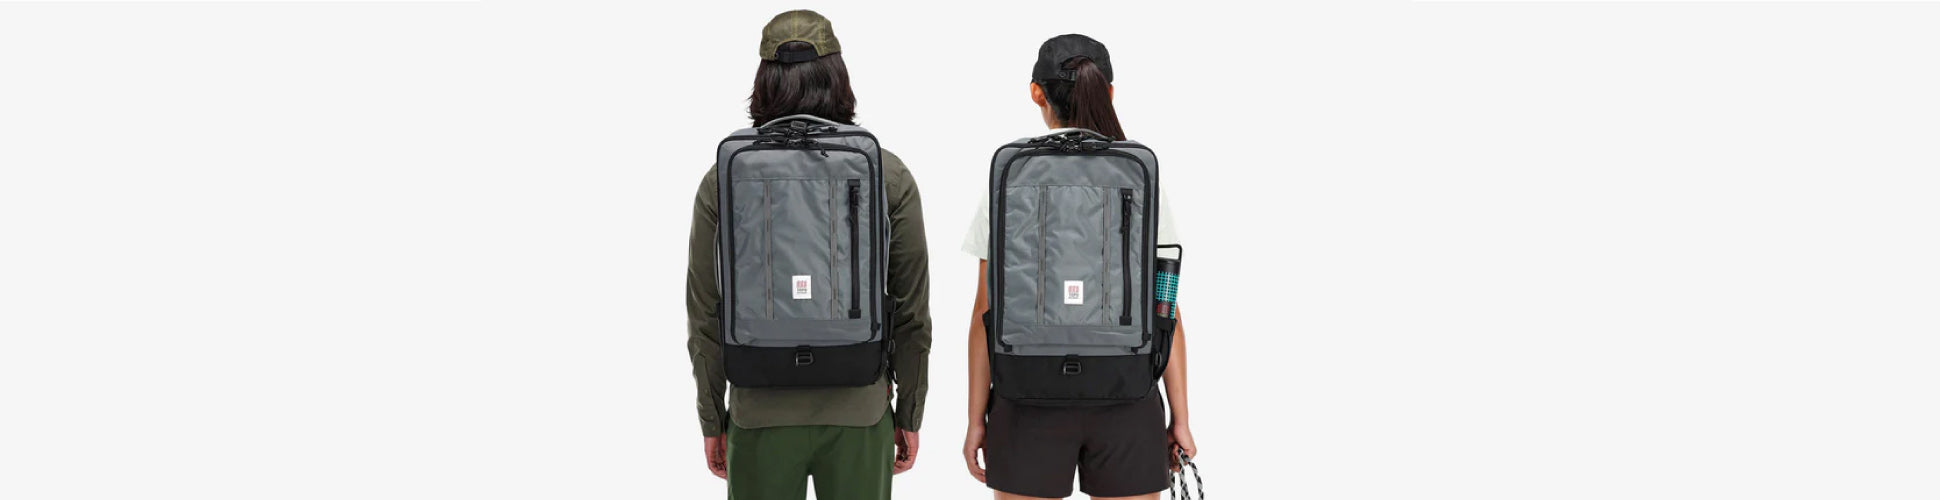 Mochilas accesorios bolsas de viaje Topo Designs